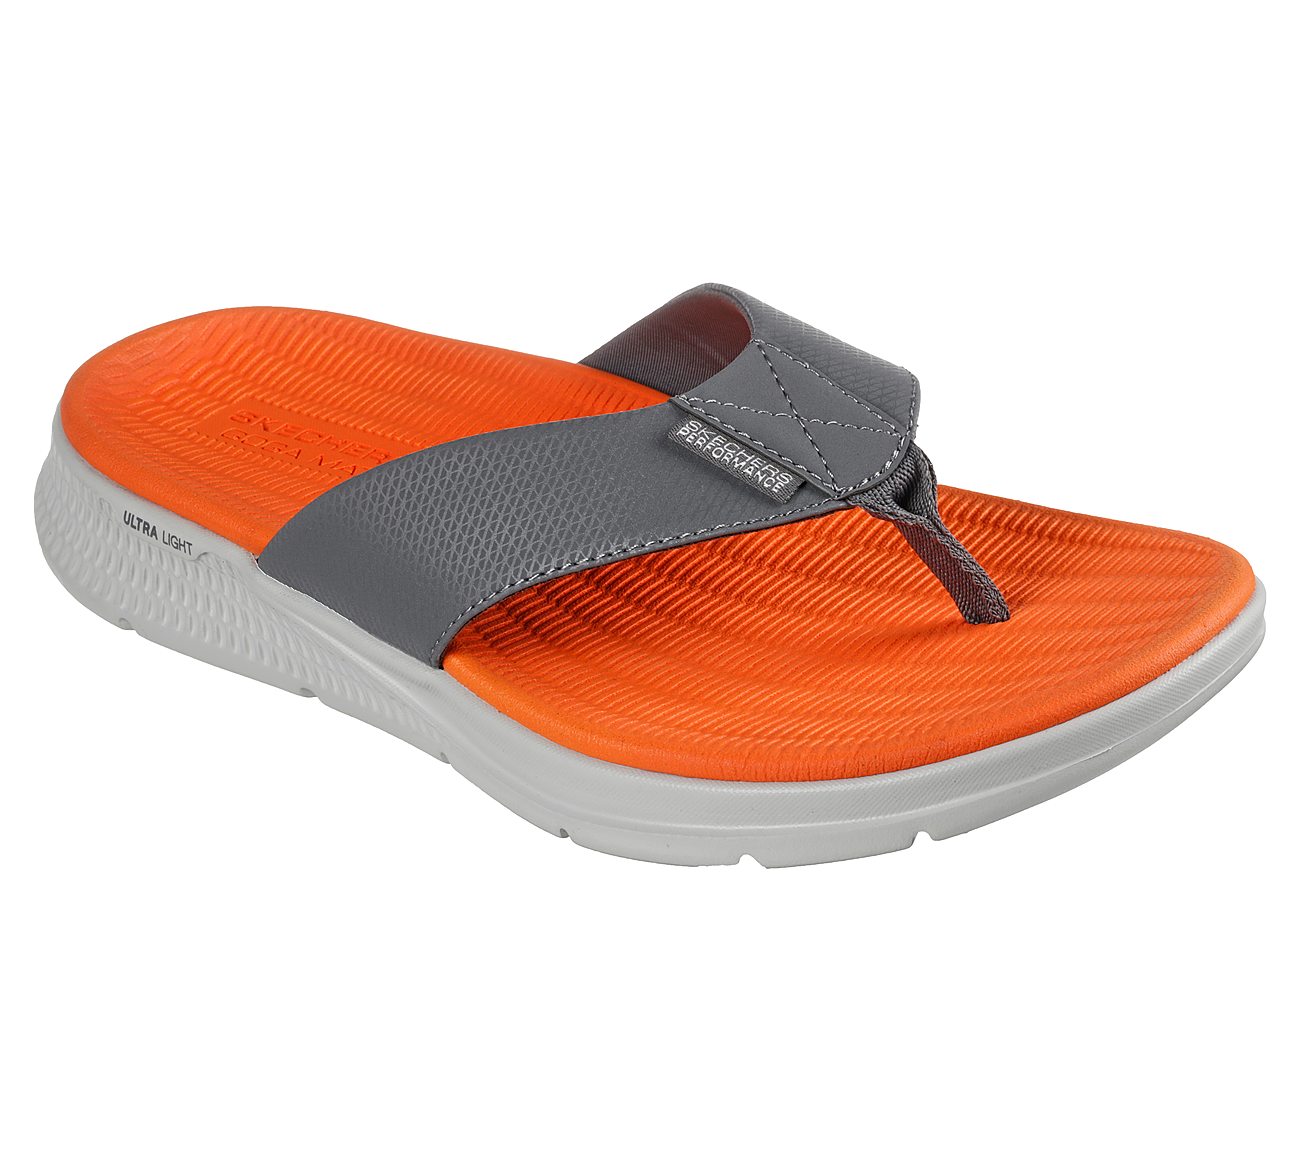 Skechers Sandals India Online on Sale - www.bridgepartnersllc.com 1695863212